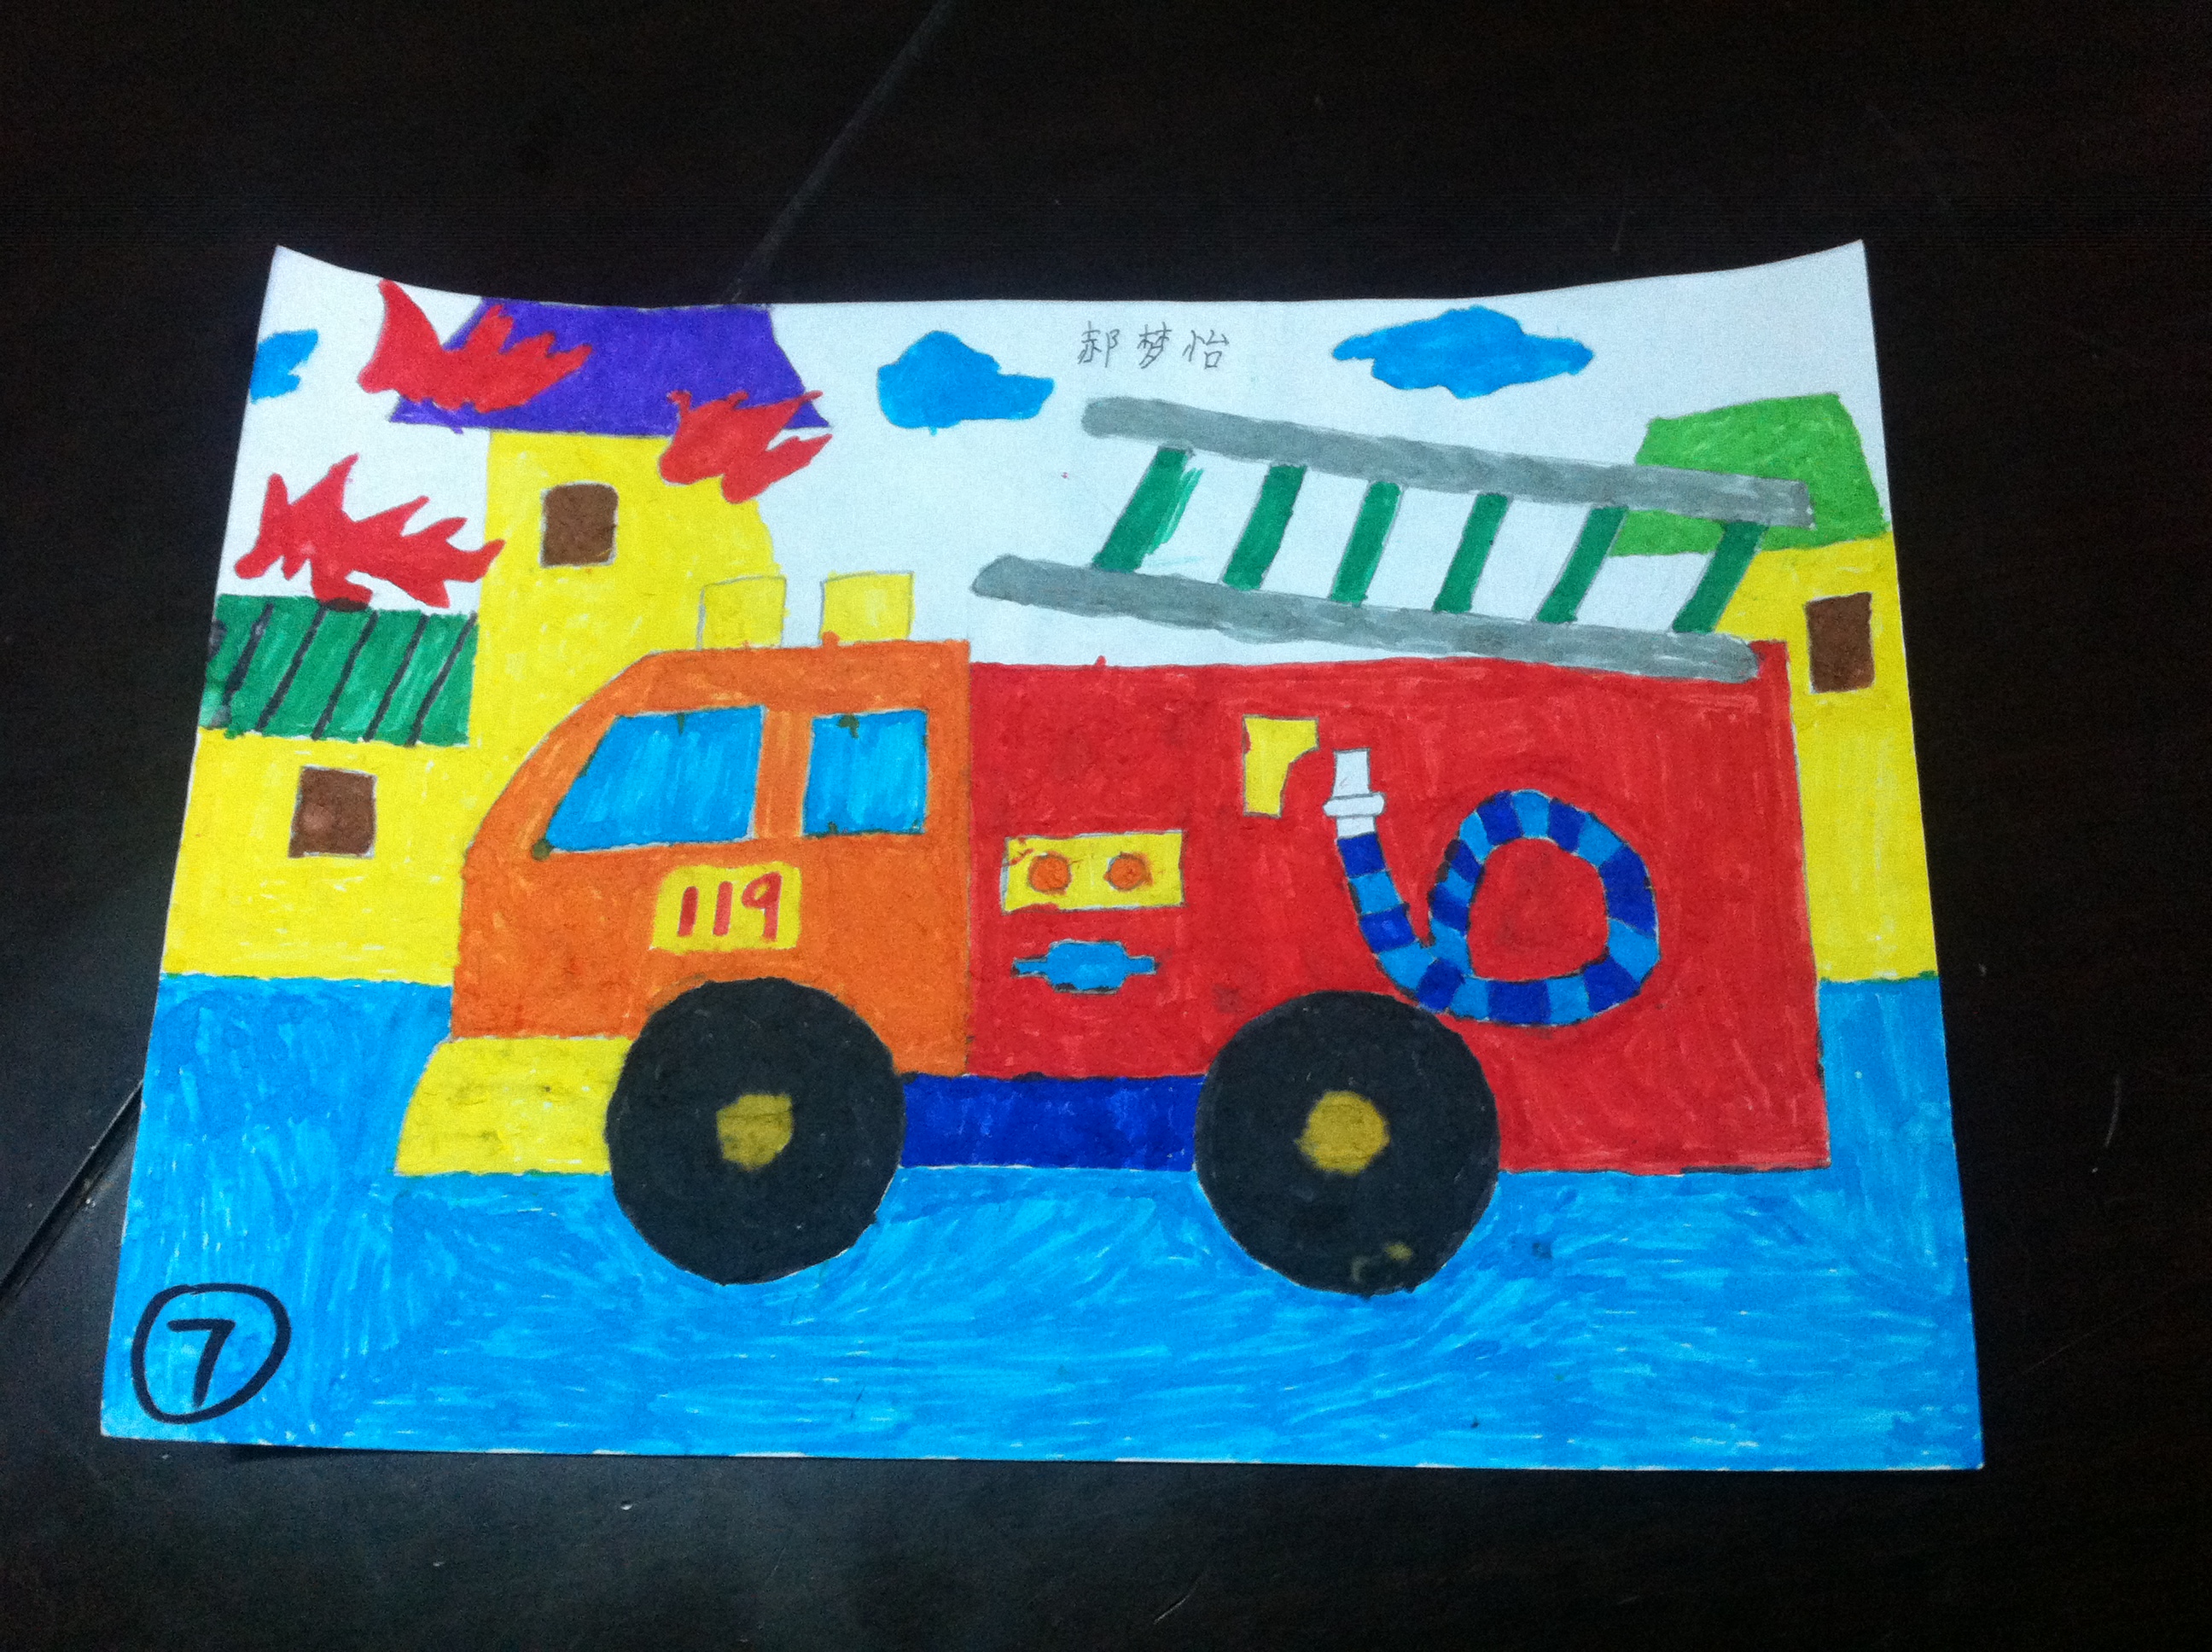 乍浦镇港区开心幼儿园开展消防知识亲子绘画活动